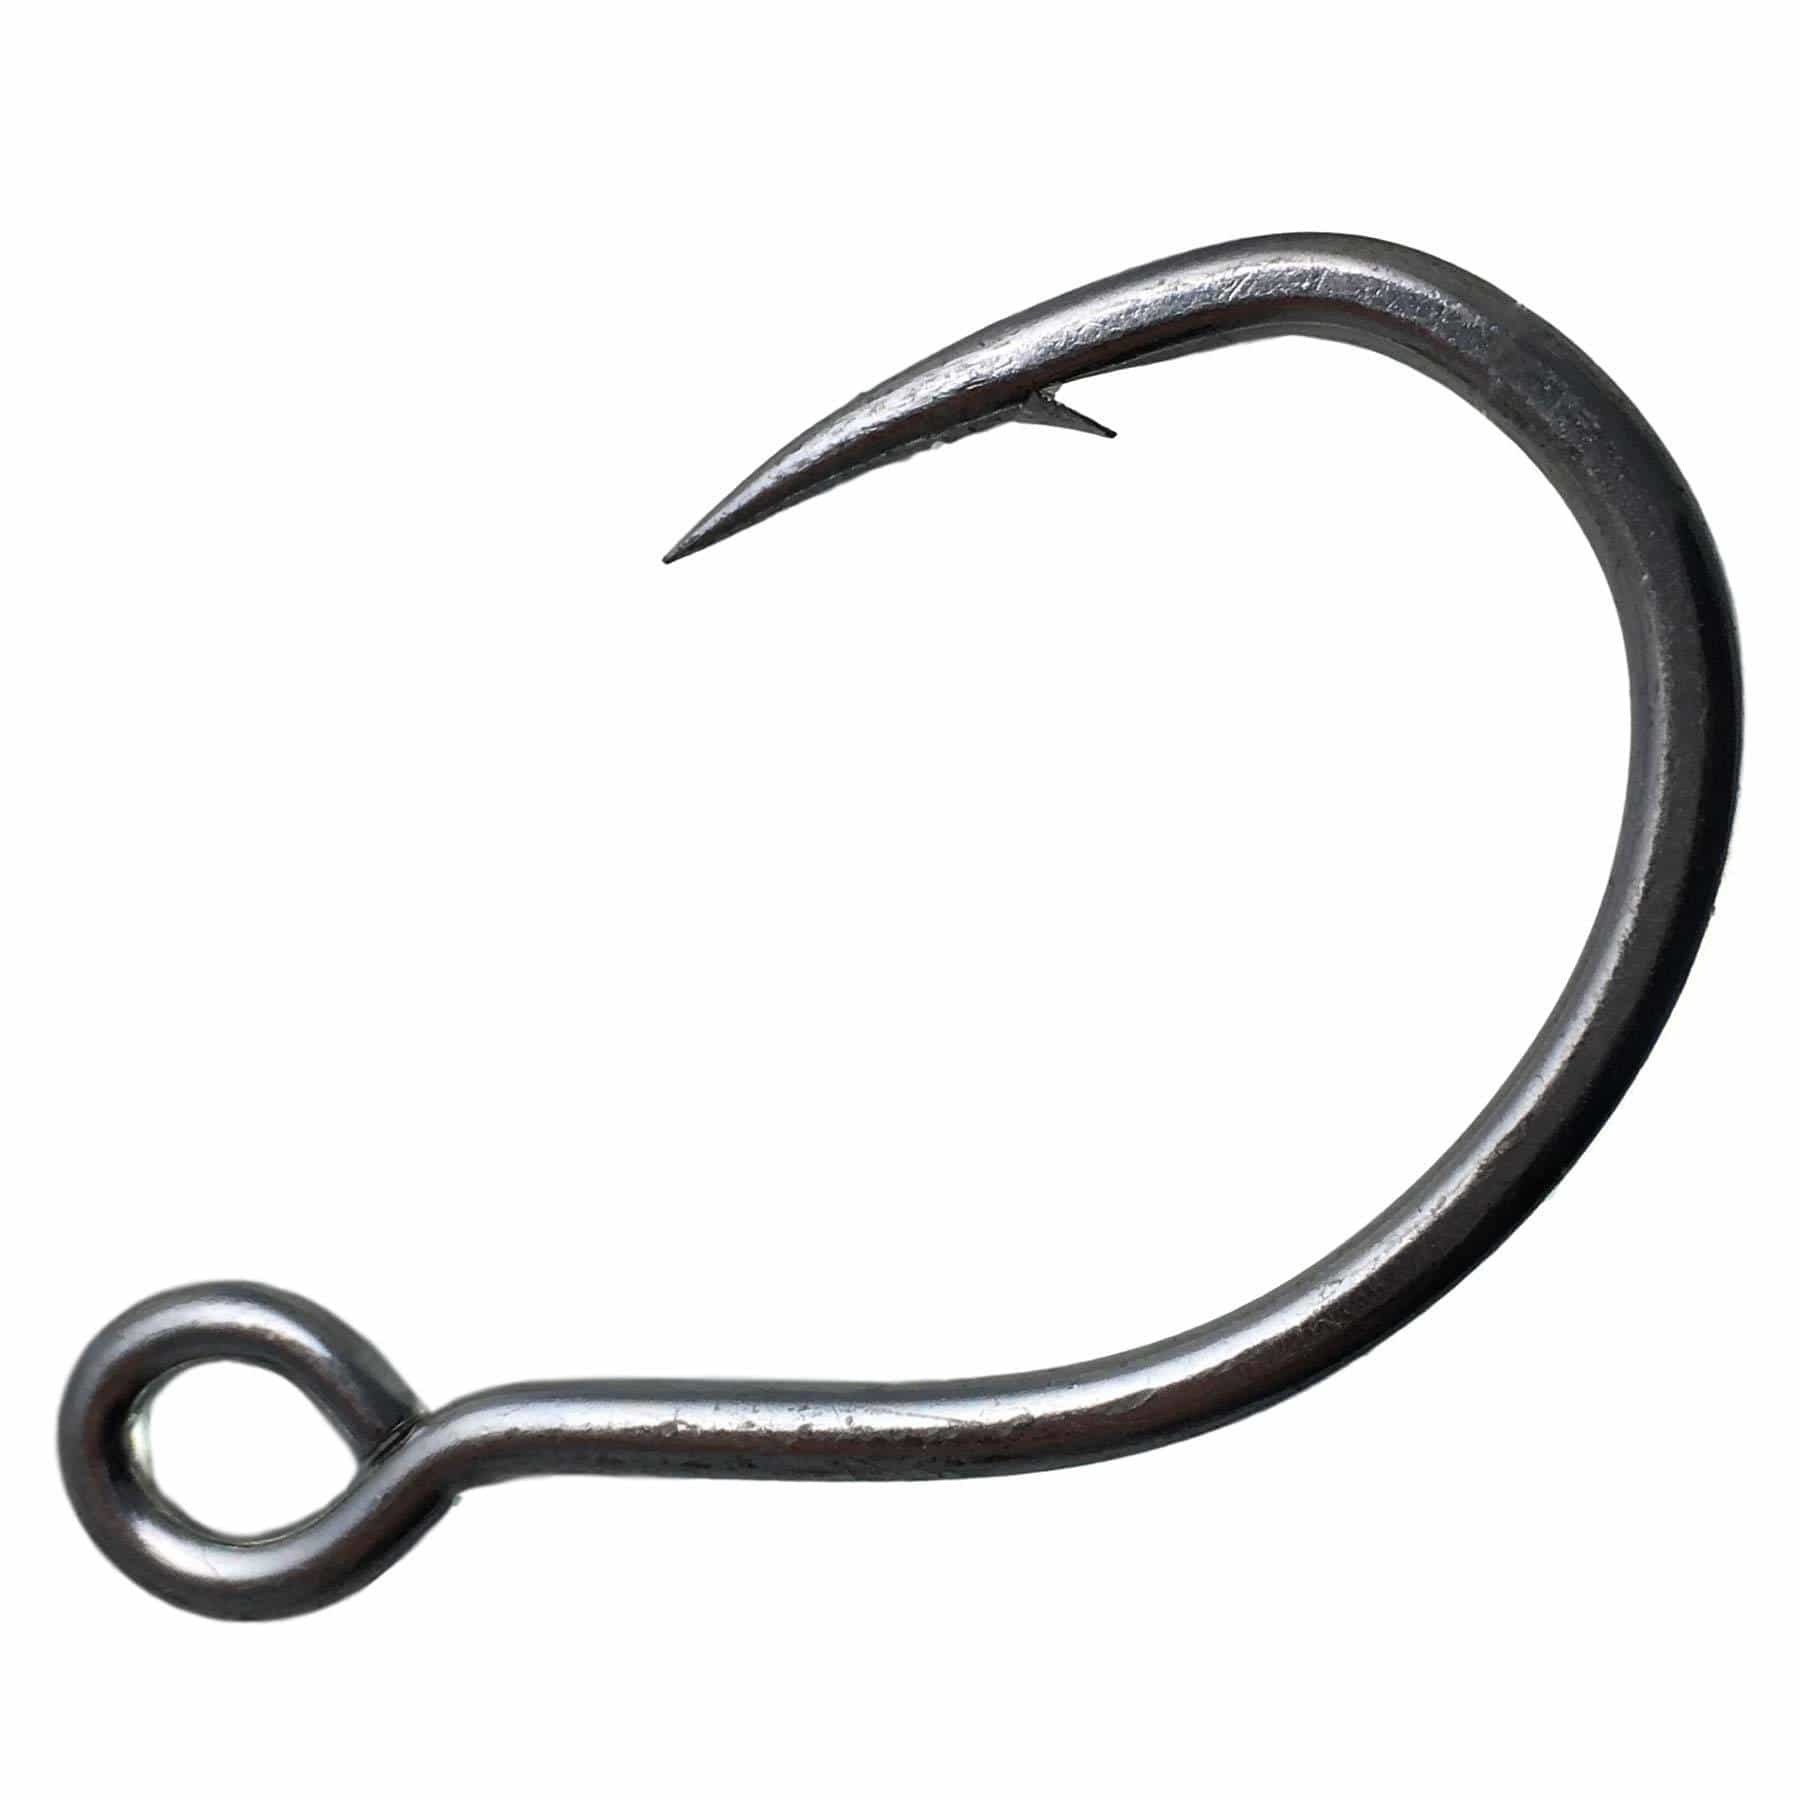 Fishing Hook - Inline Single Hooks Circle Hooks Big Eye Size #8 to